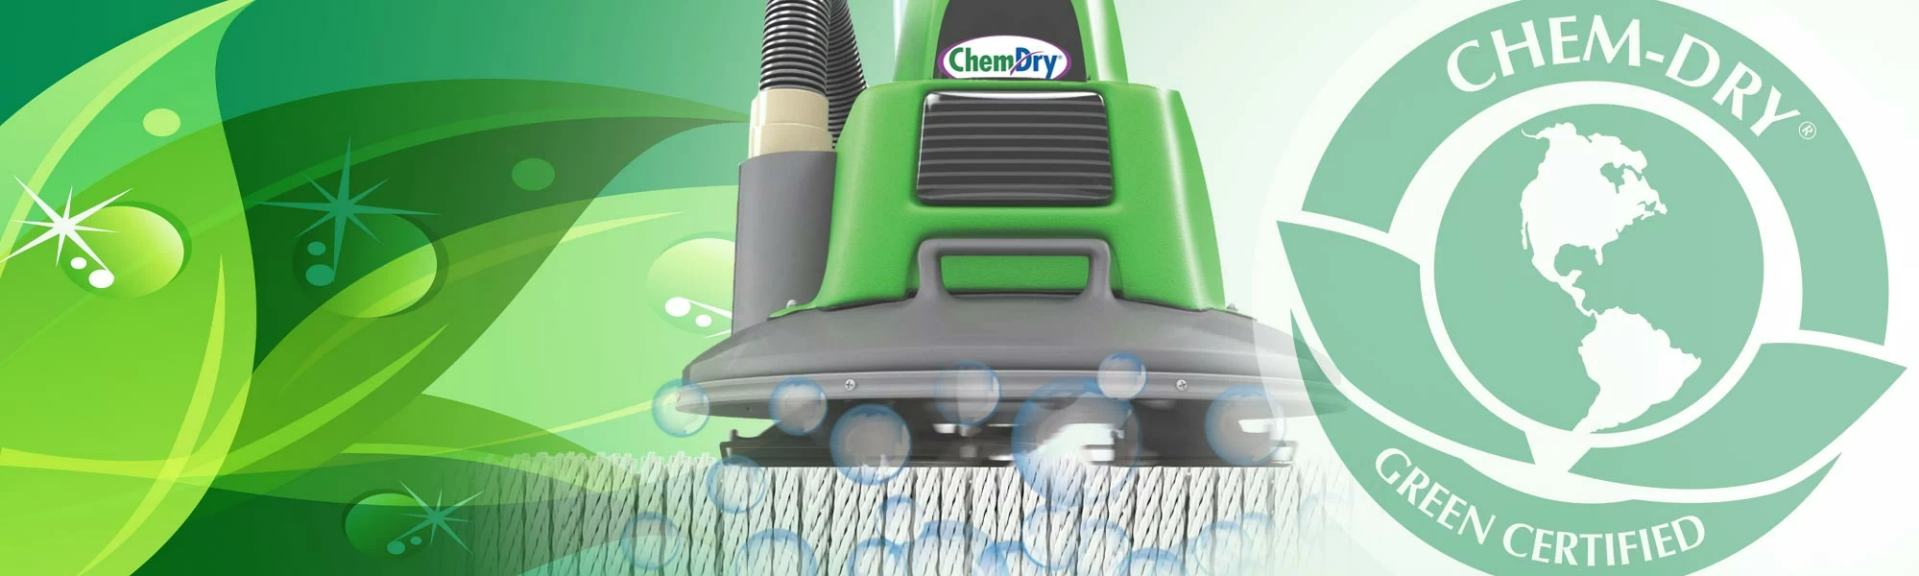 Chem-Dry Green Certified